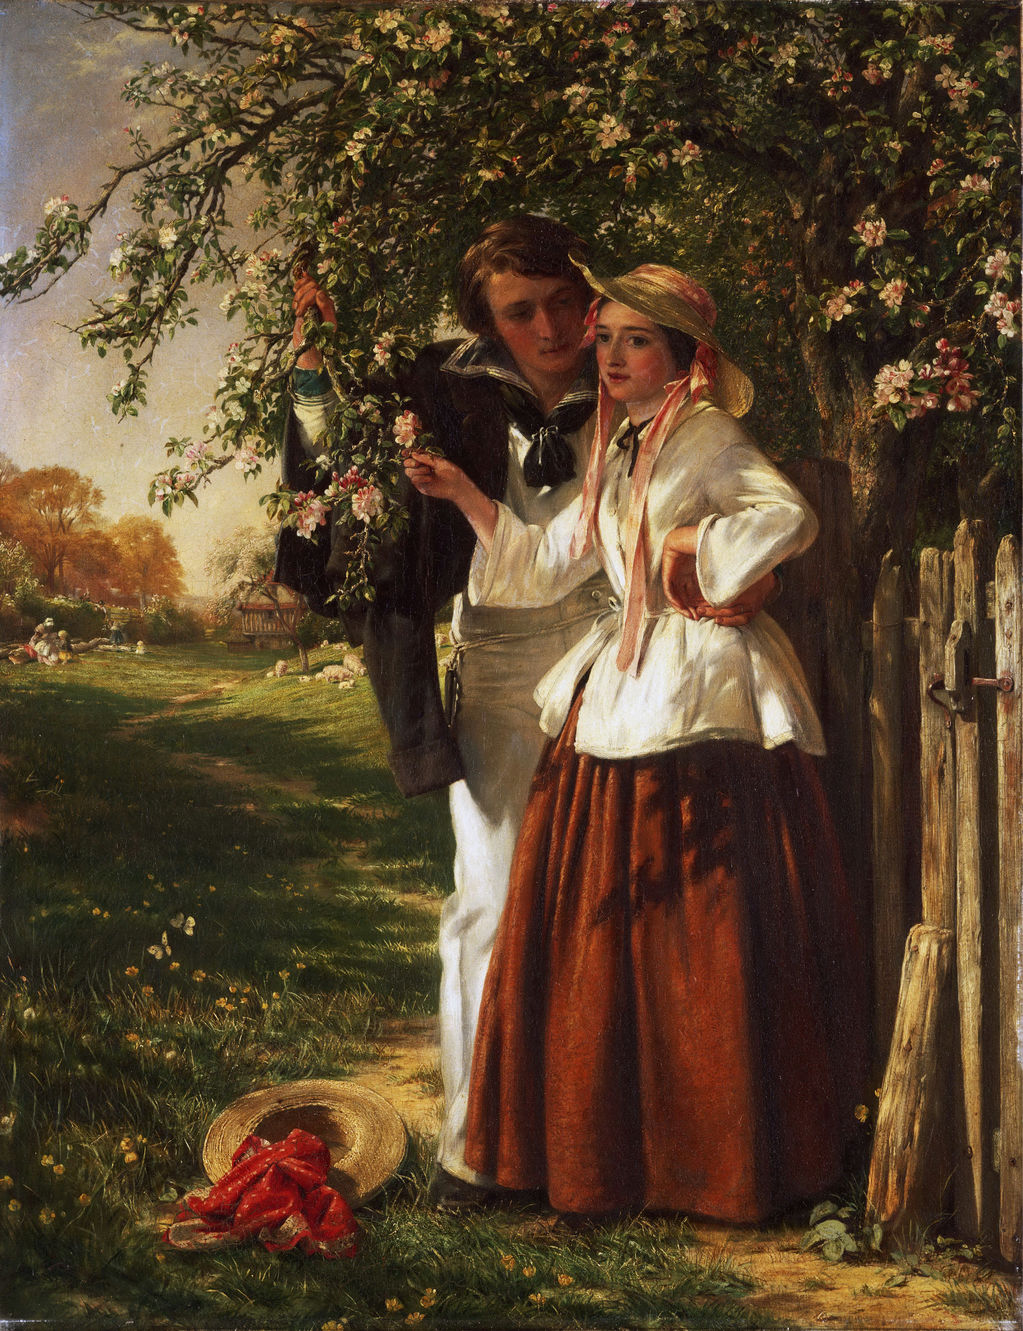 Lovers under a Blossom Tree by John Callcott Horsley (English, 1817 - 1903)